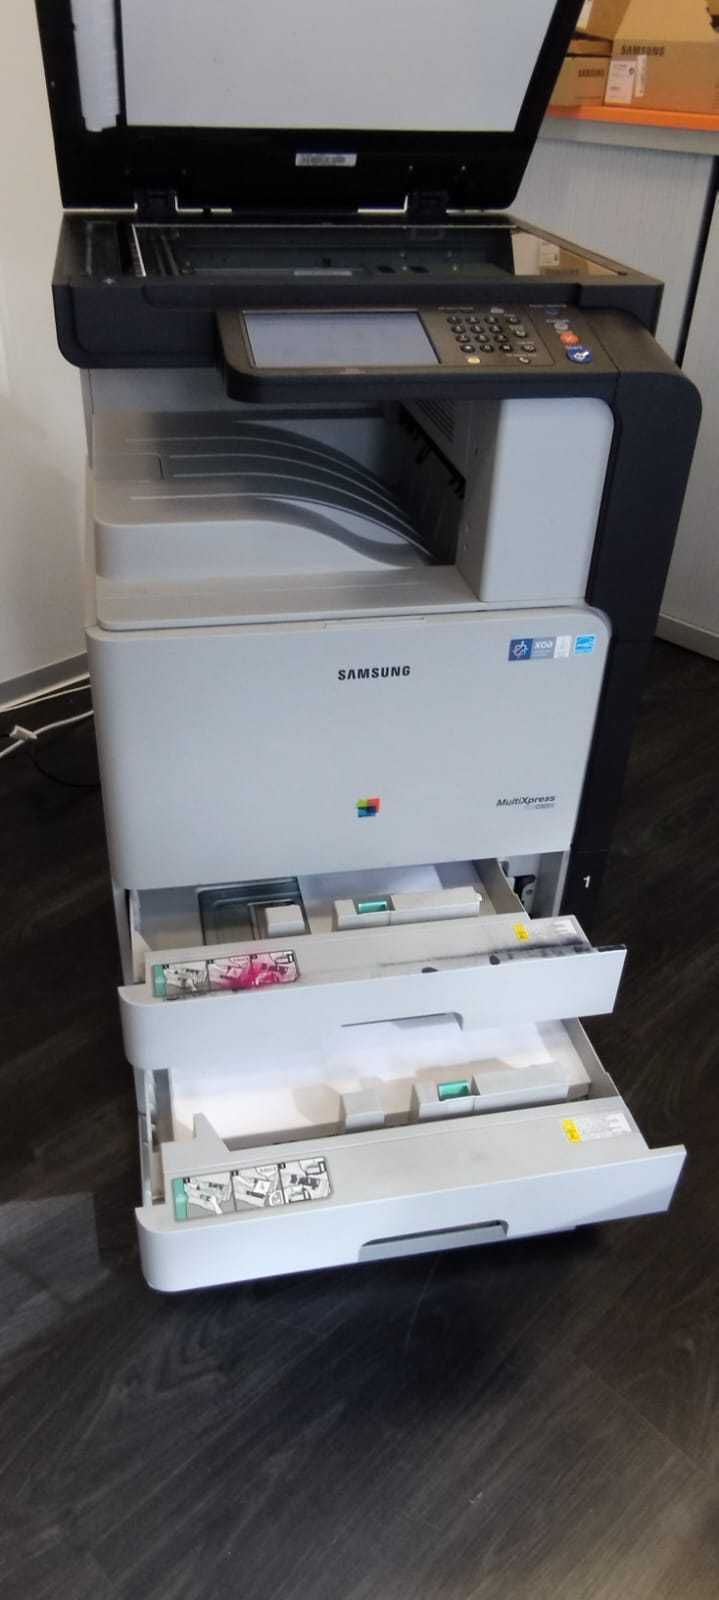 Samsung CLX-9251 Impressora, scaner, fax, fotocopiadora toner a cores